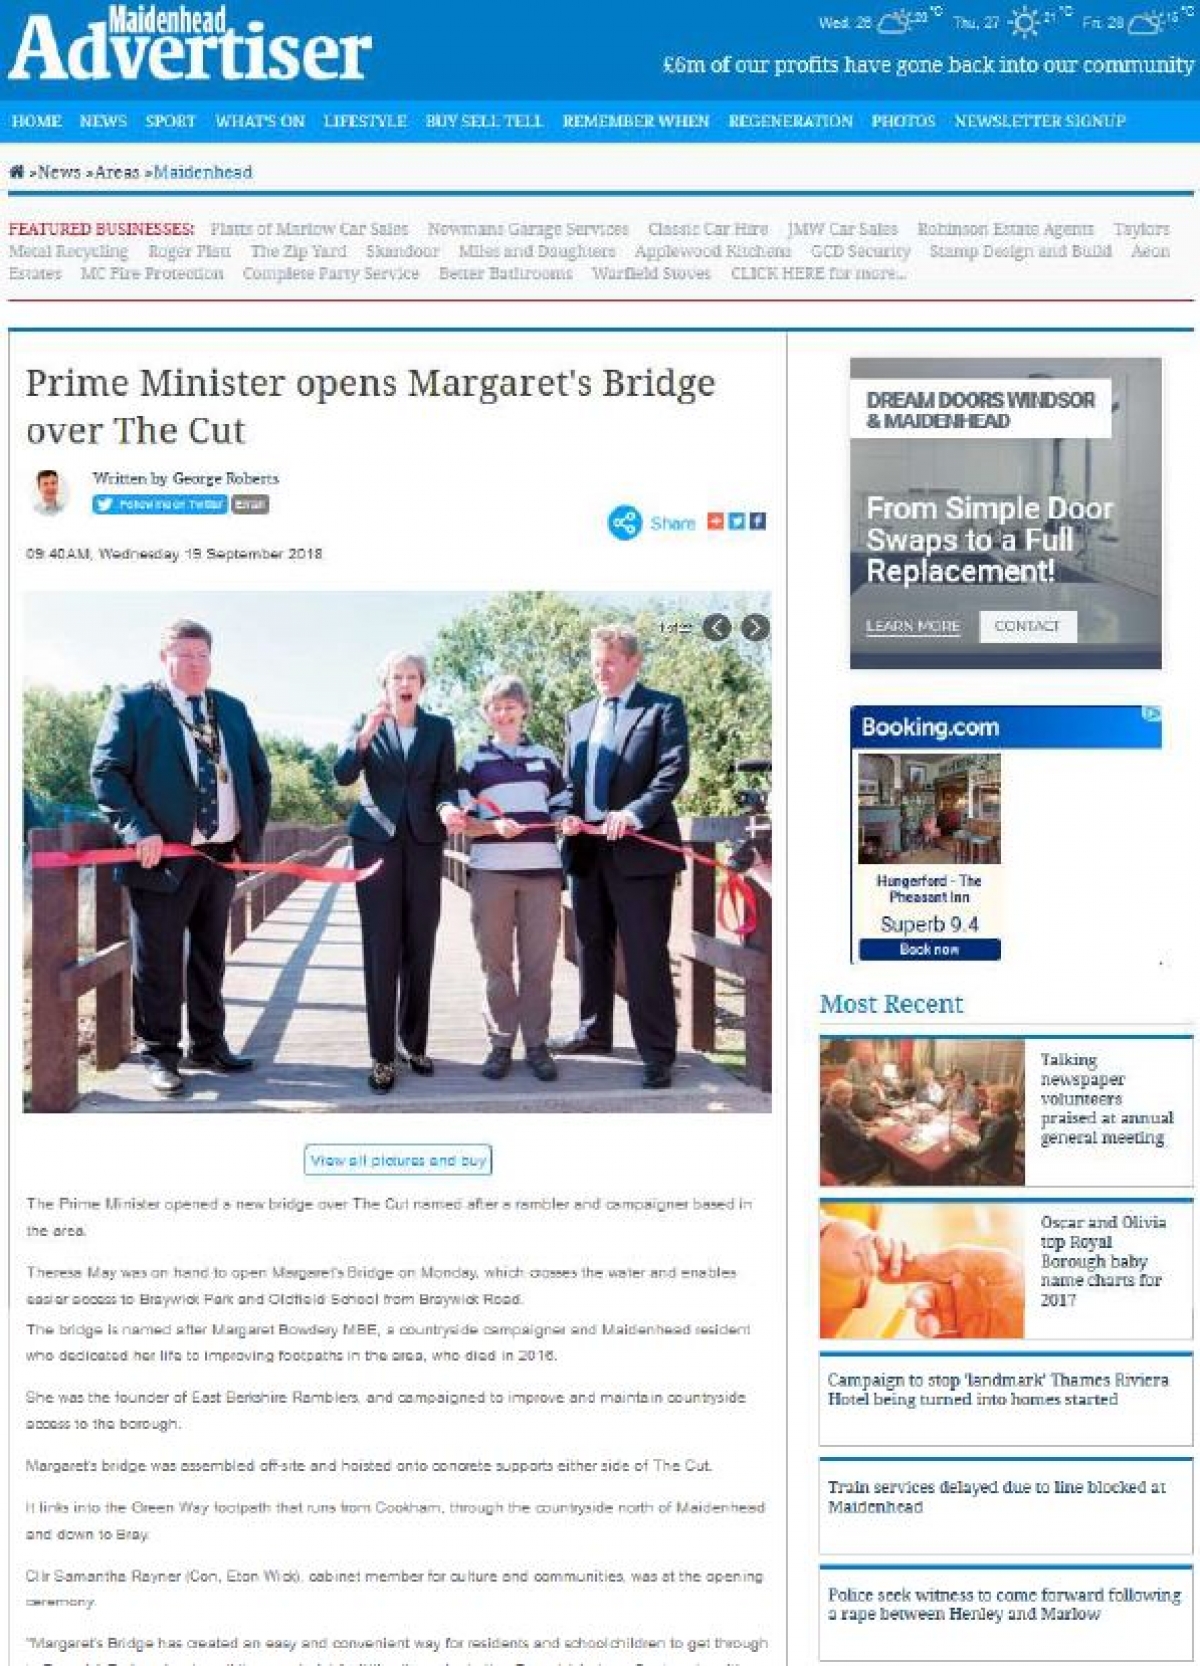 Prime Minister Opens Margarets Bridge Maidenhead Advertiser September 2018